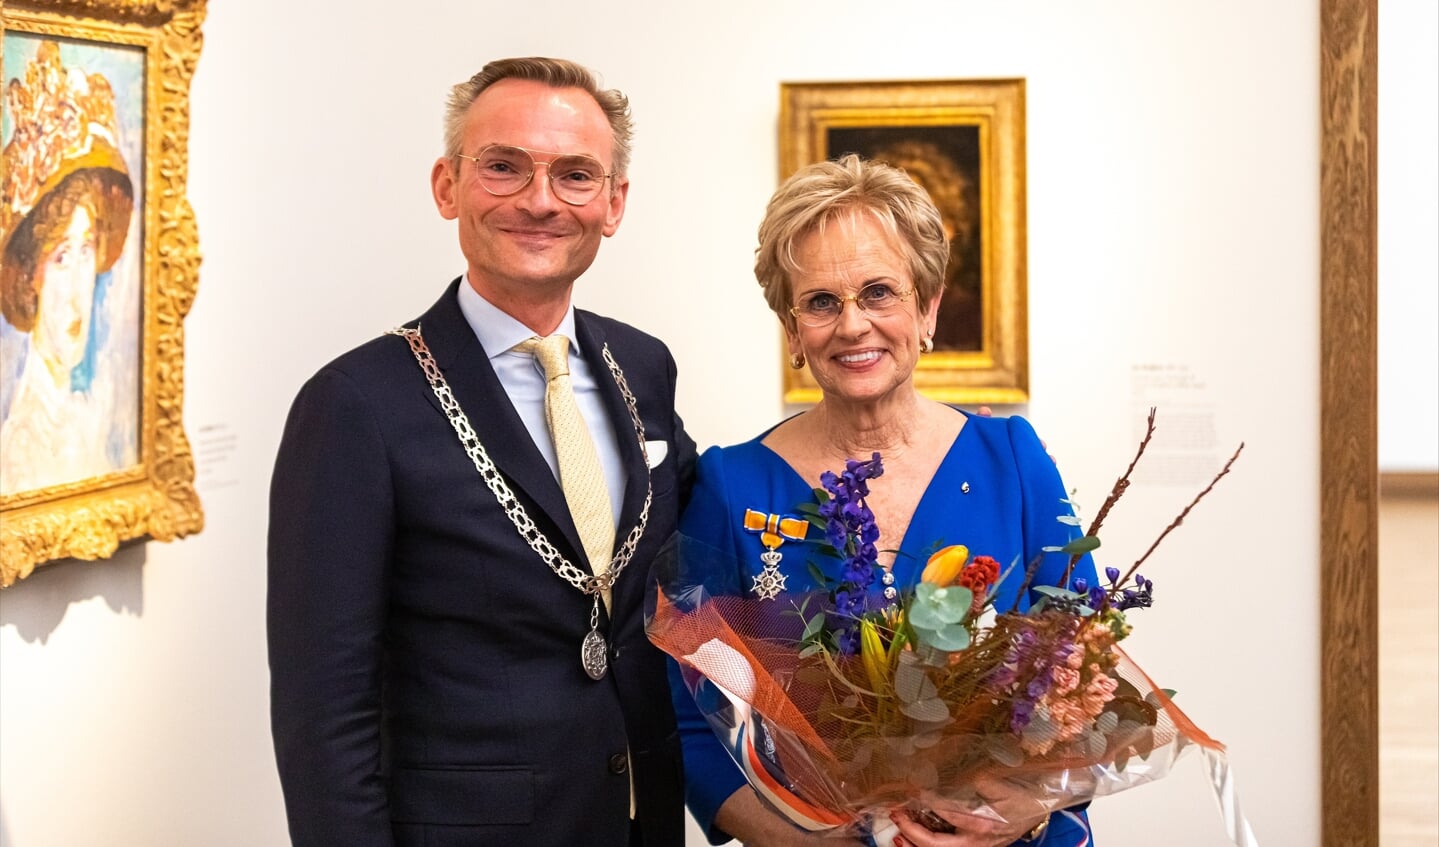 Burgemeester Nanning Mol en Els Blokker-Verwer.